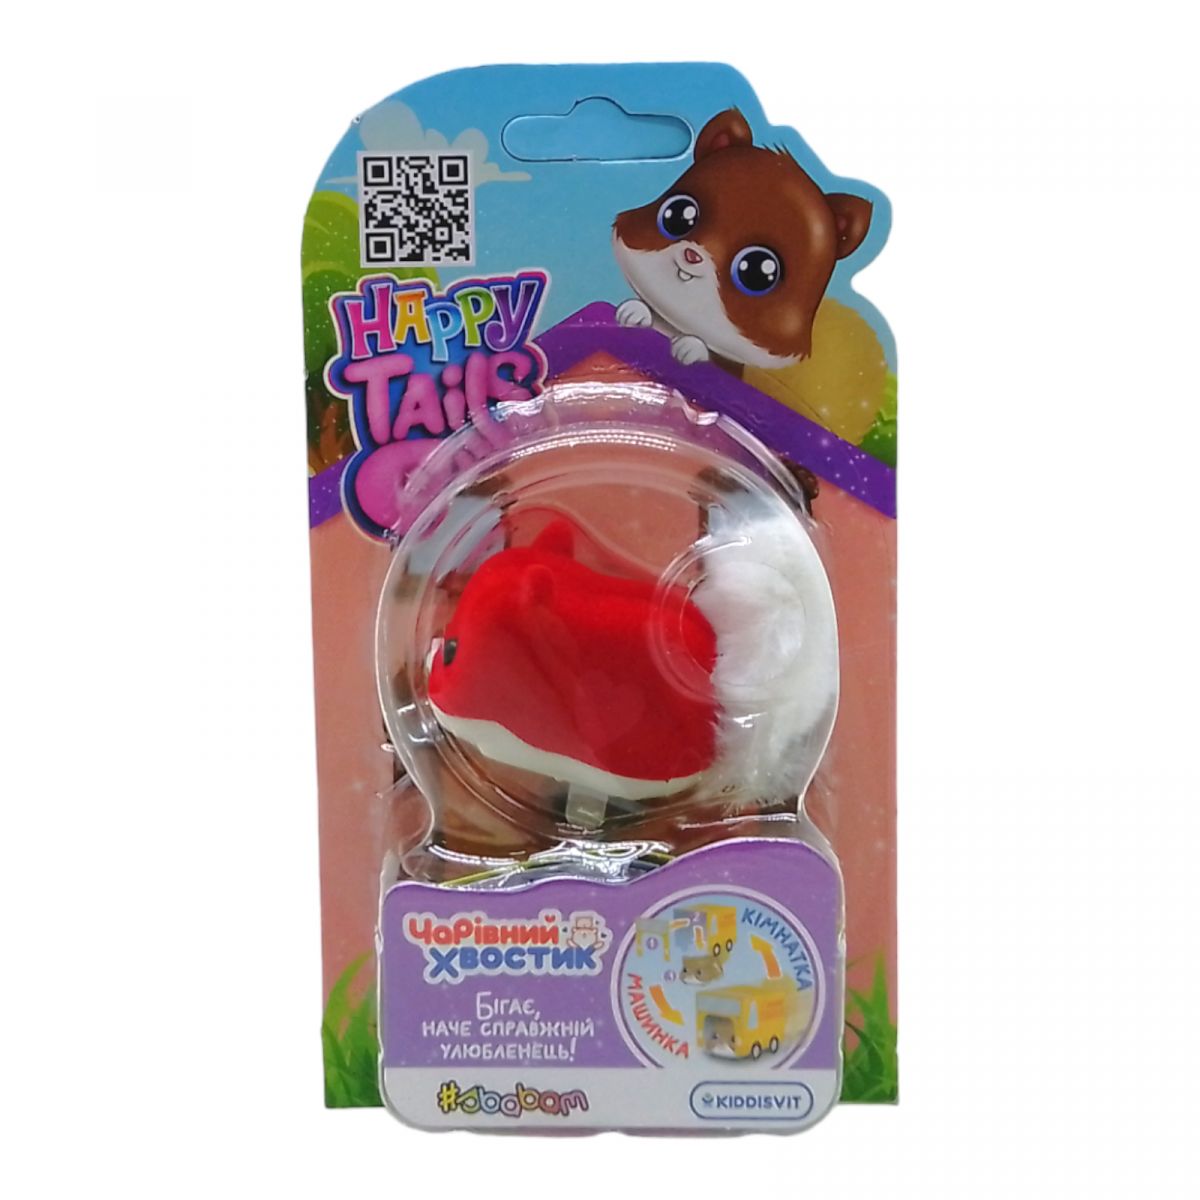 Інтерактивна іграшка Happy Tails" – Чарівний хвостик" Пон-Пон